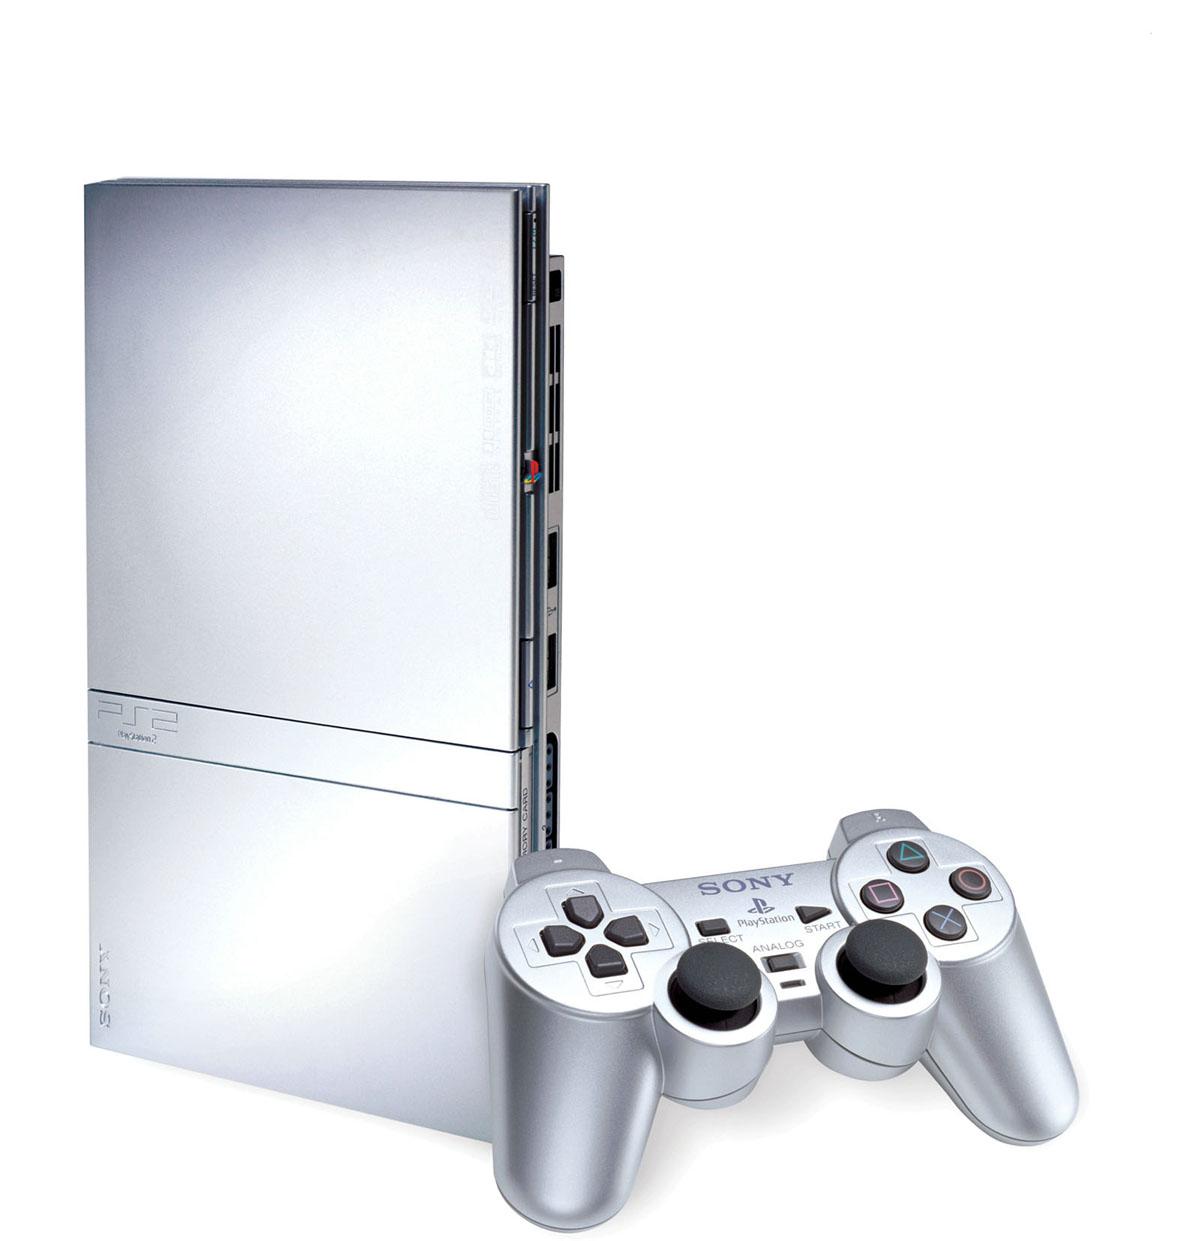 Nuevo modelo de PS2 en plata - MeriStation